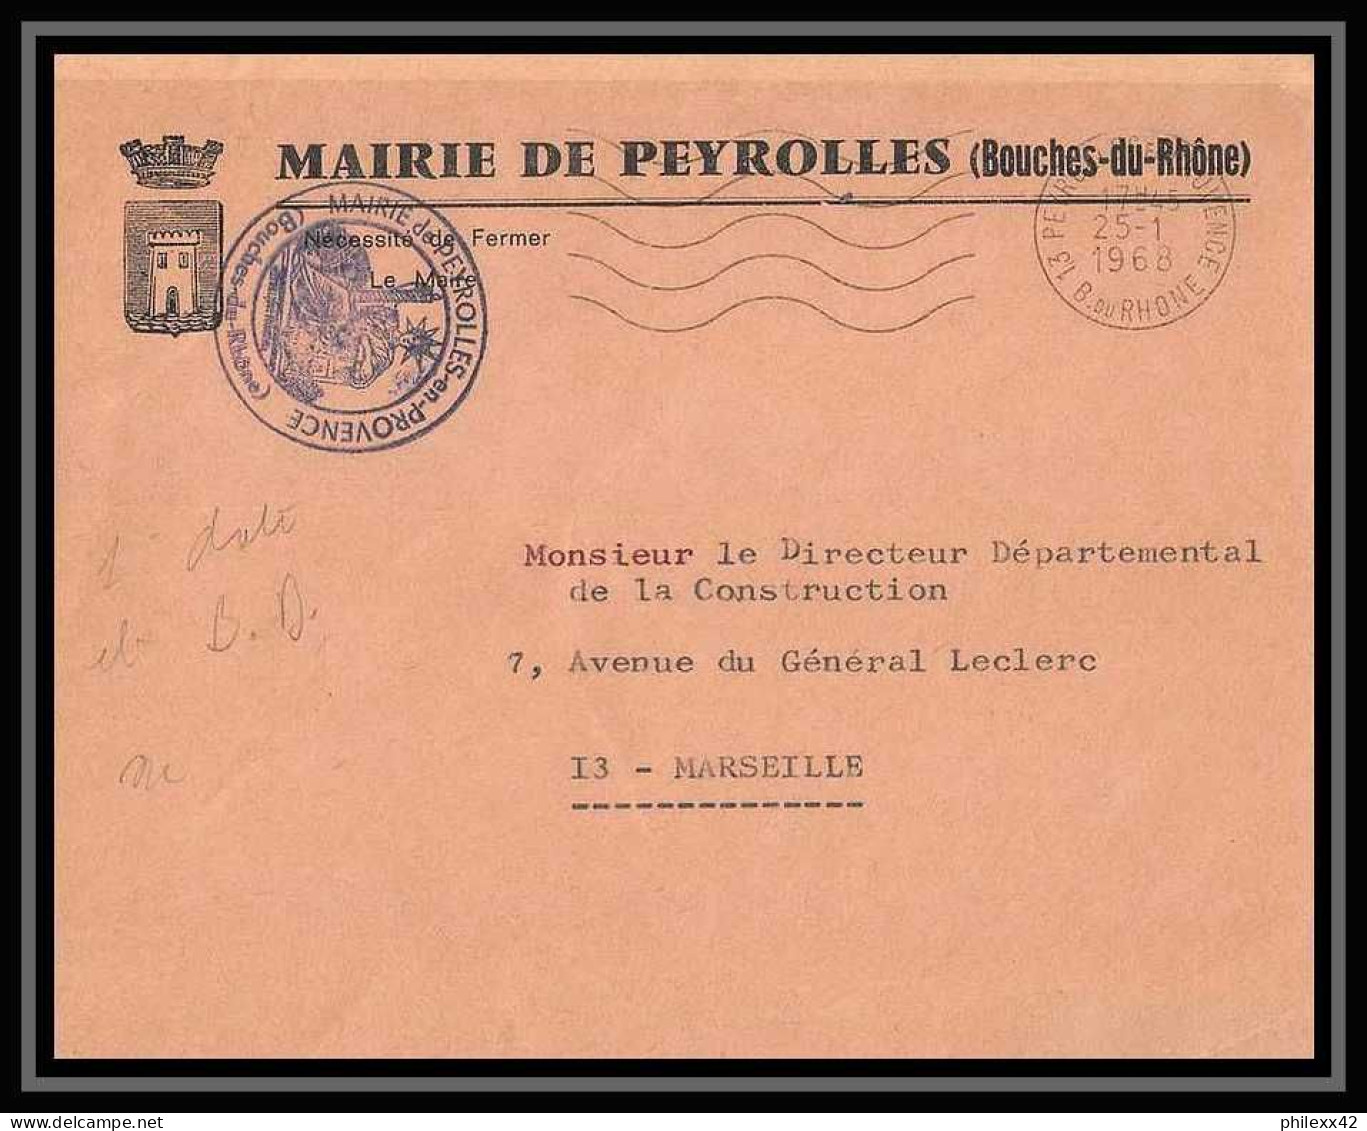 114369 lot de 12 Lettres +divers cover Bouches du rhone Peyrolles